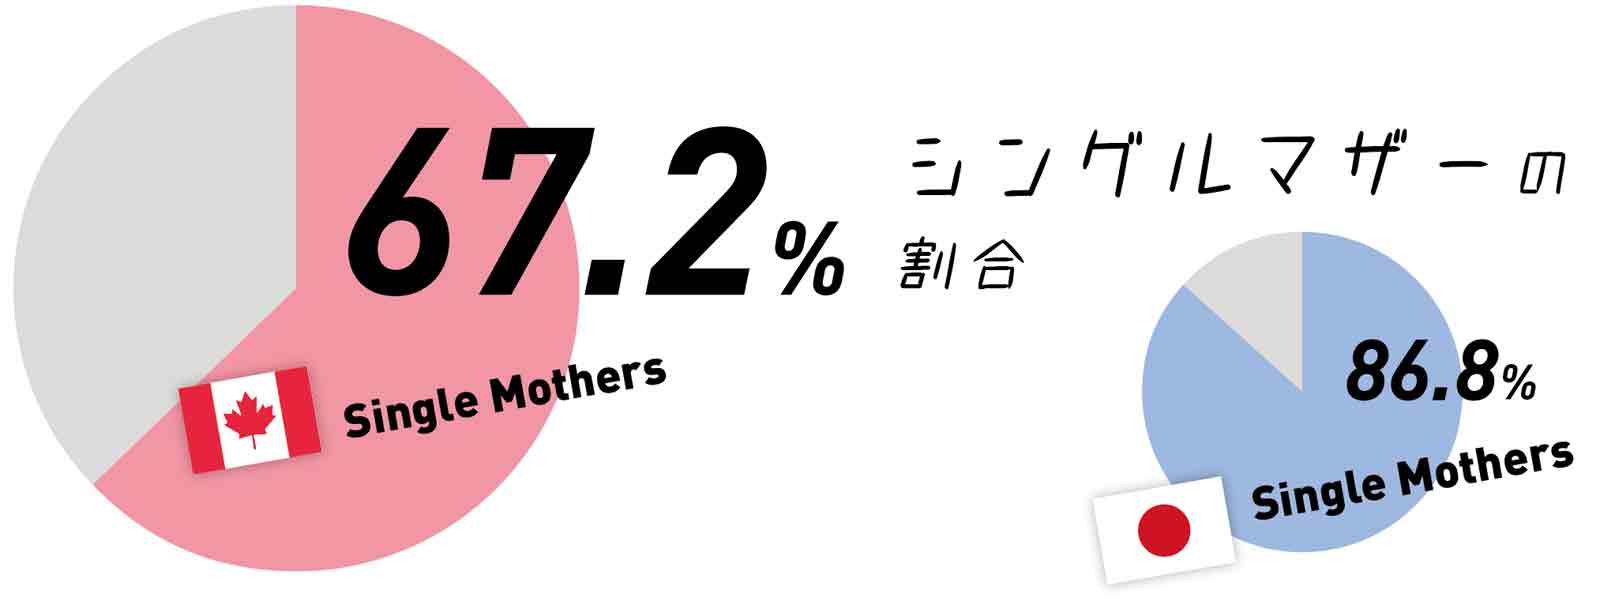 シングルマザーの割合67.2%